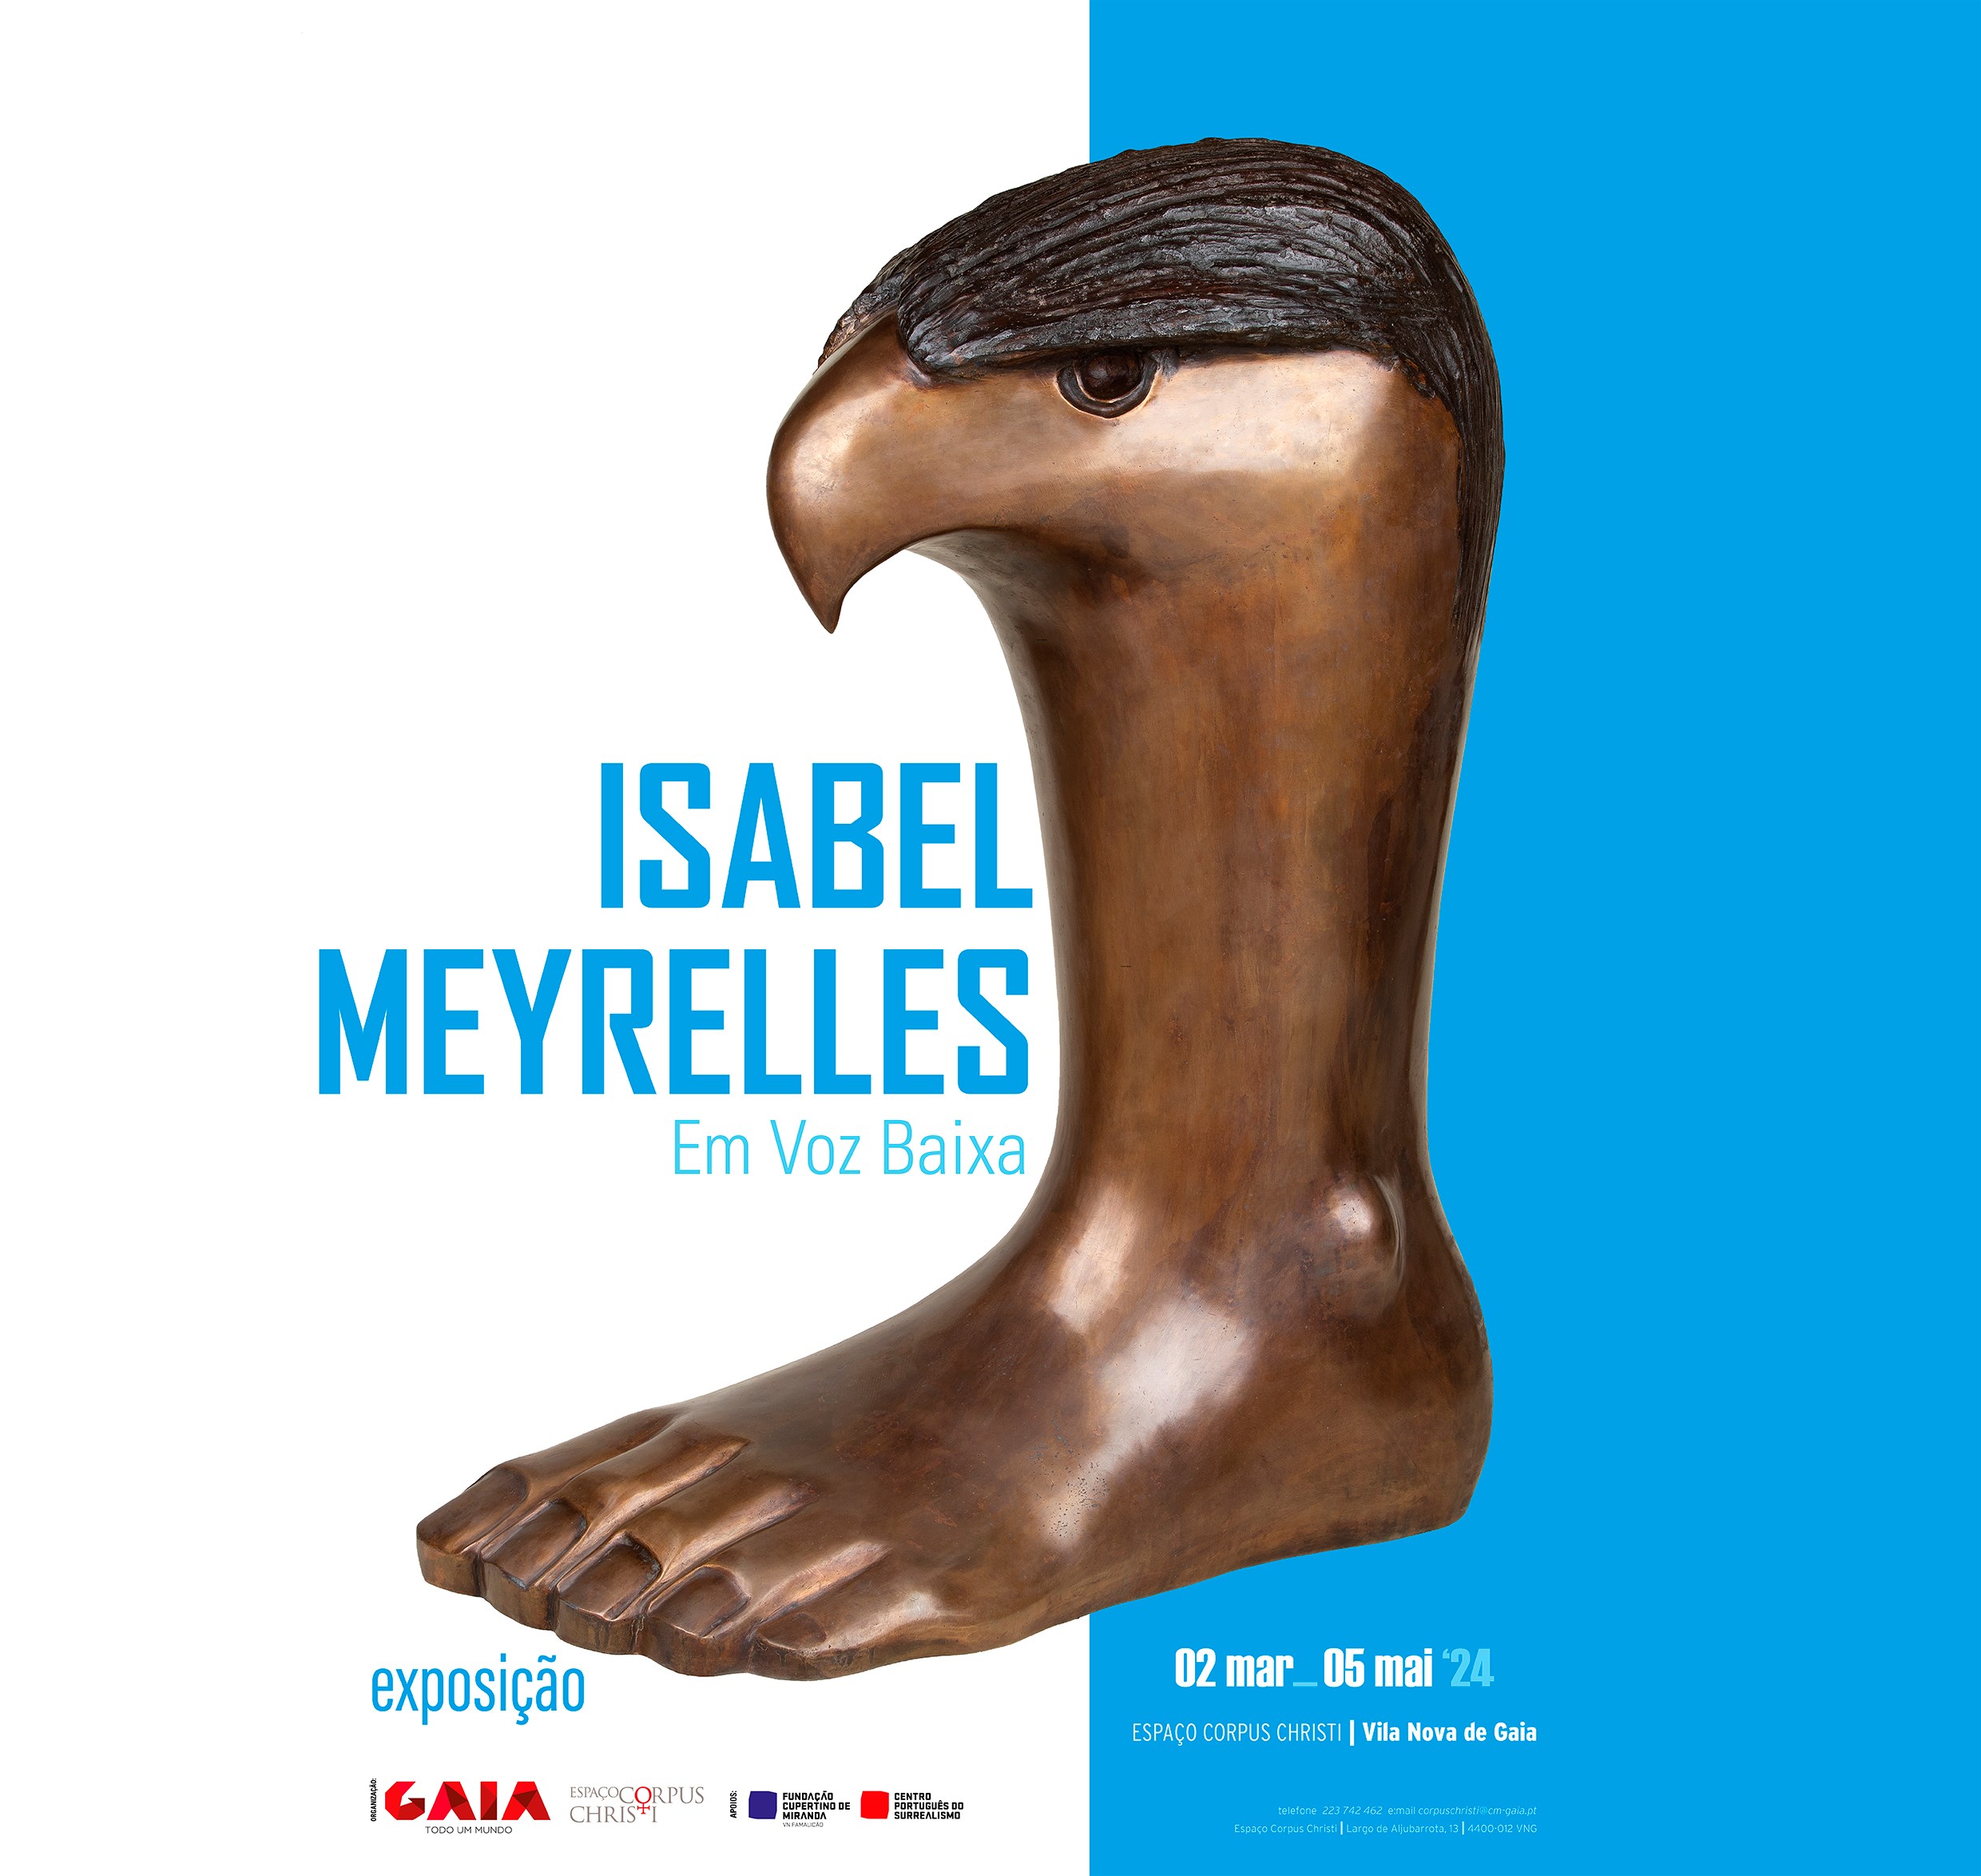 Inauguração exposição "Isabel Meyrelles - Em voz baixa"